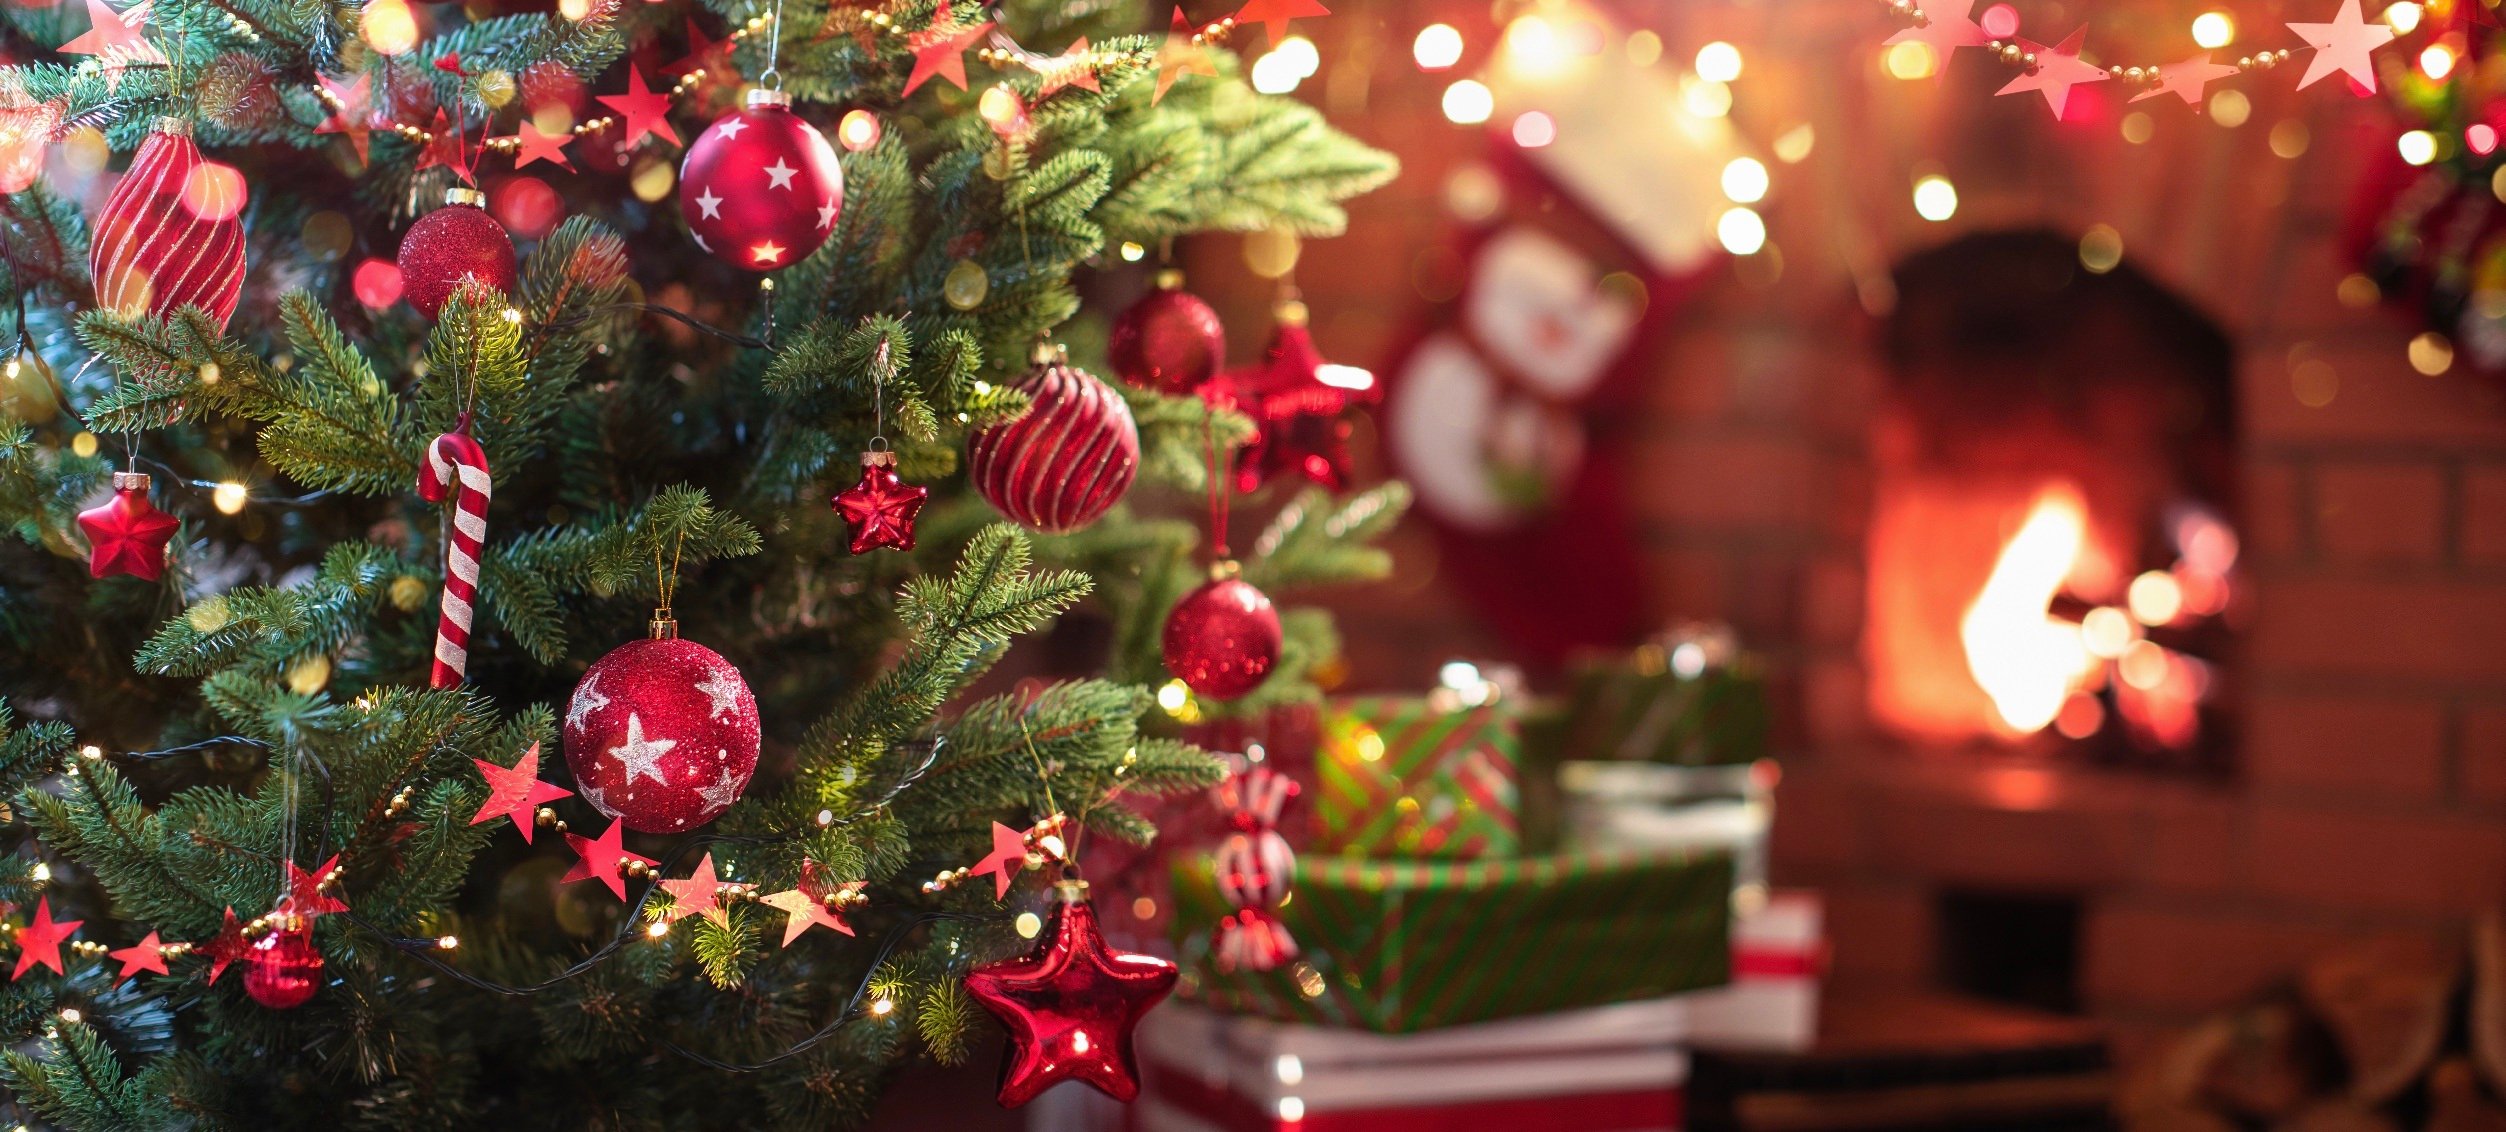 4-Προτάσεις-για-Χριστουγεννιάτικο-δέντρο-σε-κόκκινο-χρώμα!